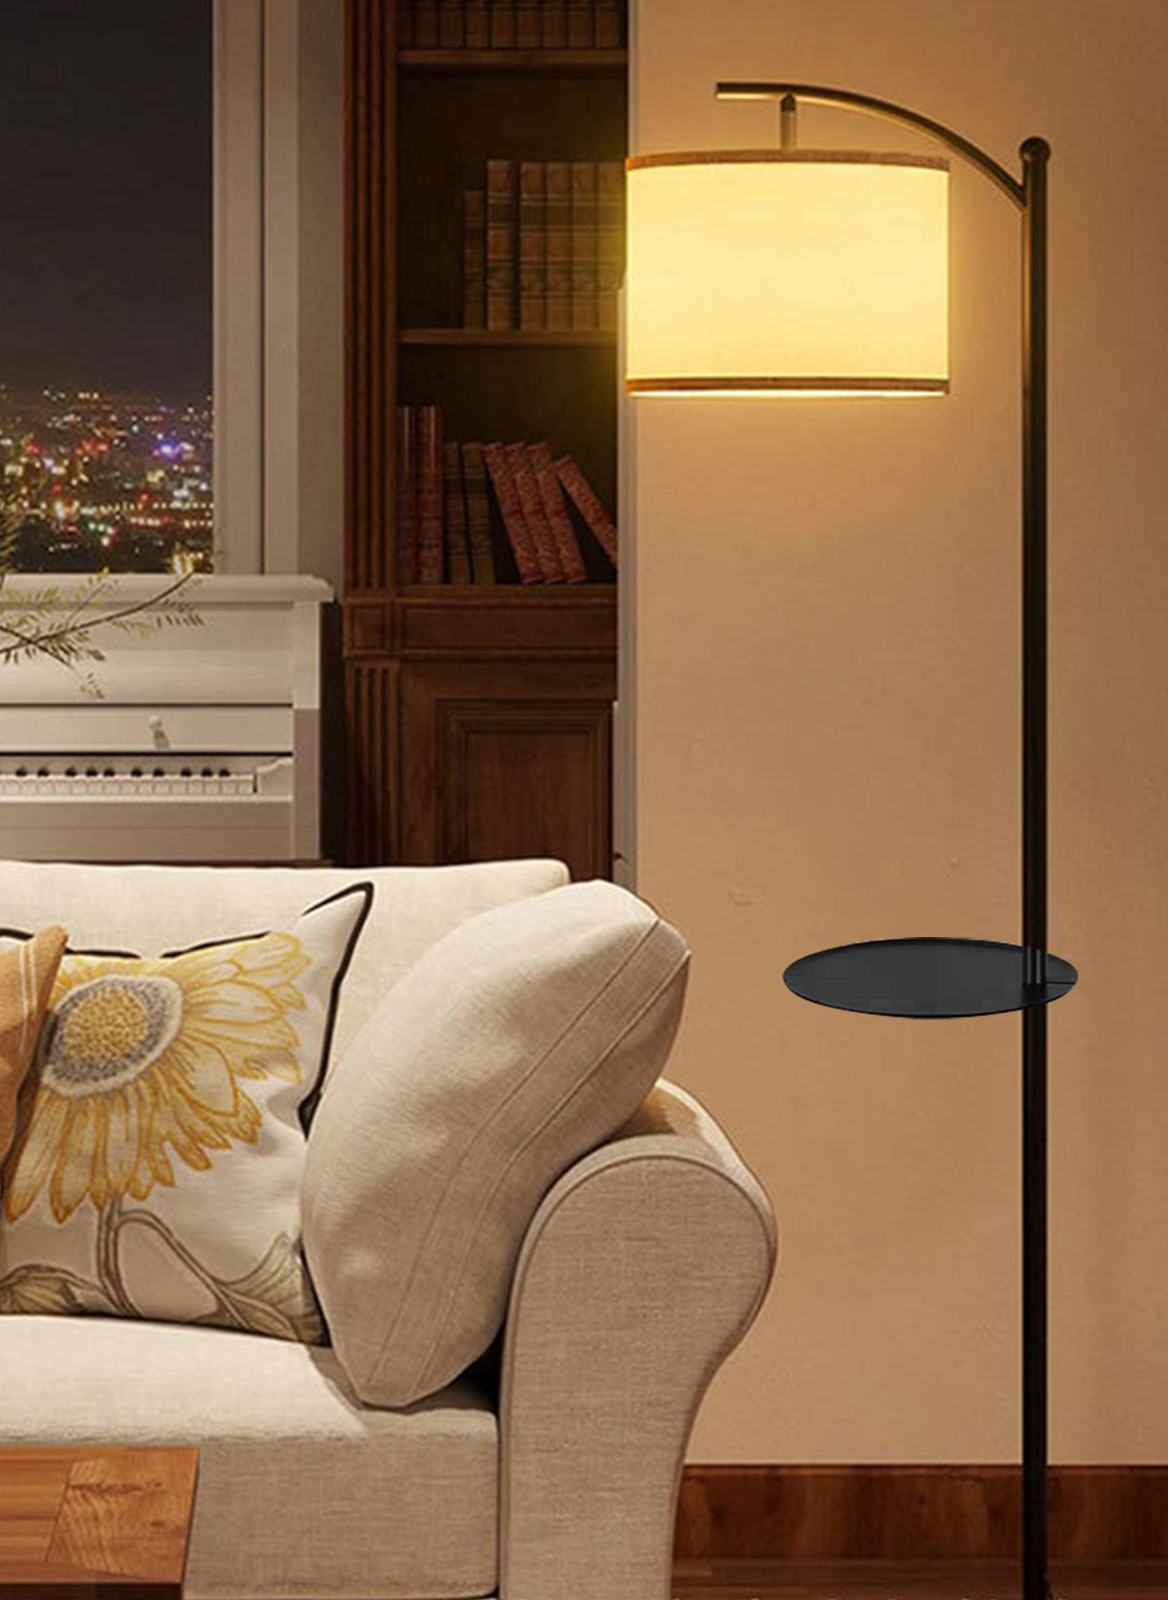 غرفة المعيشة وغرفة نوم مع الجرف قابل للتعديل ثلاثة ألوان الكلمة مصباح ( D28 * H170 سم )